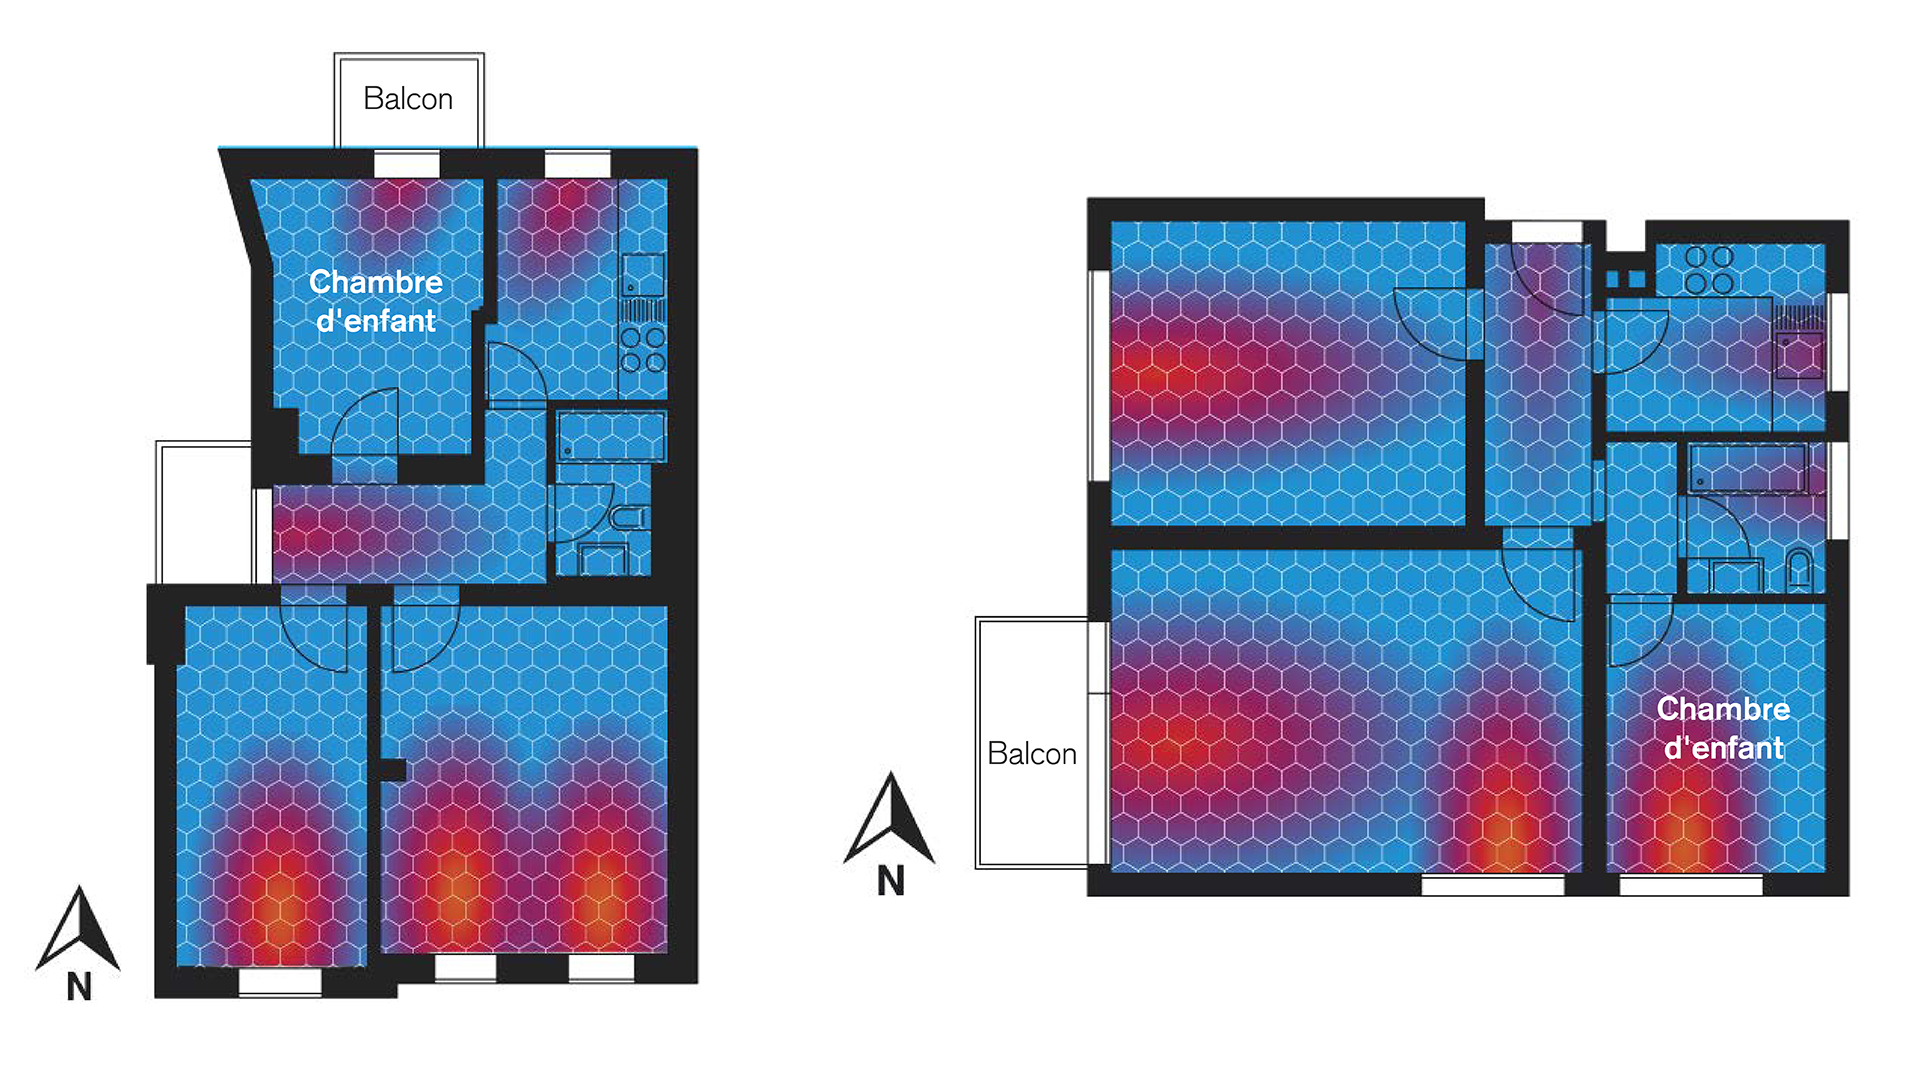 Le plan d’ensemble du logement permet d’optimiser l’intensité de la lumière incidente